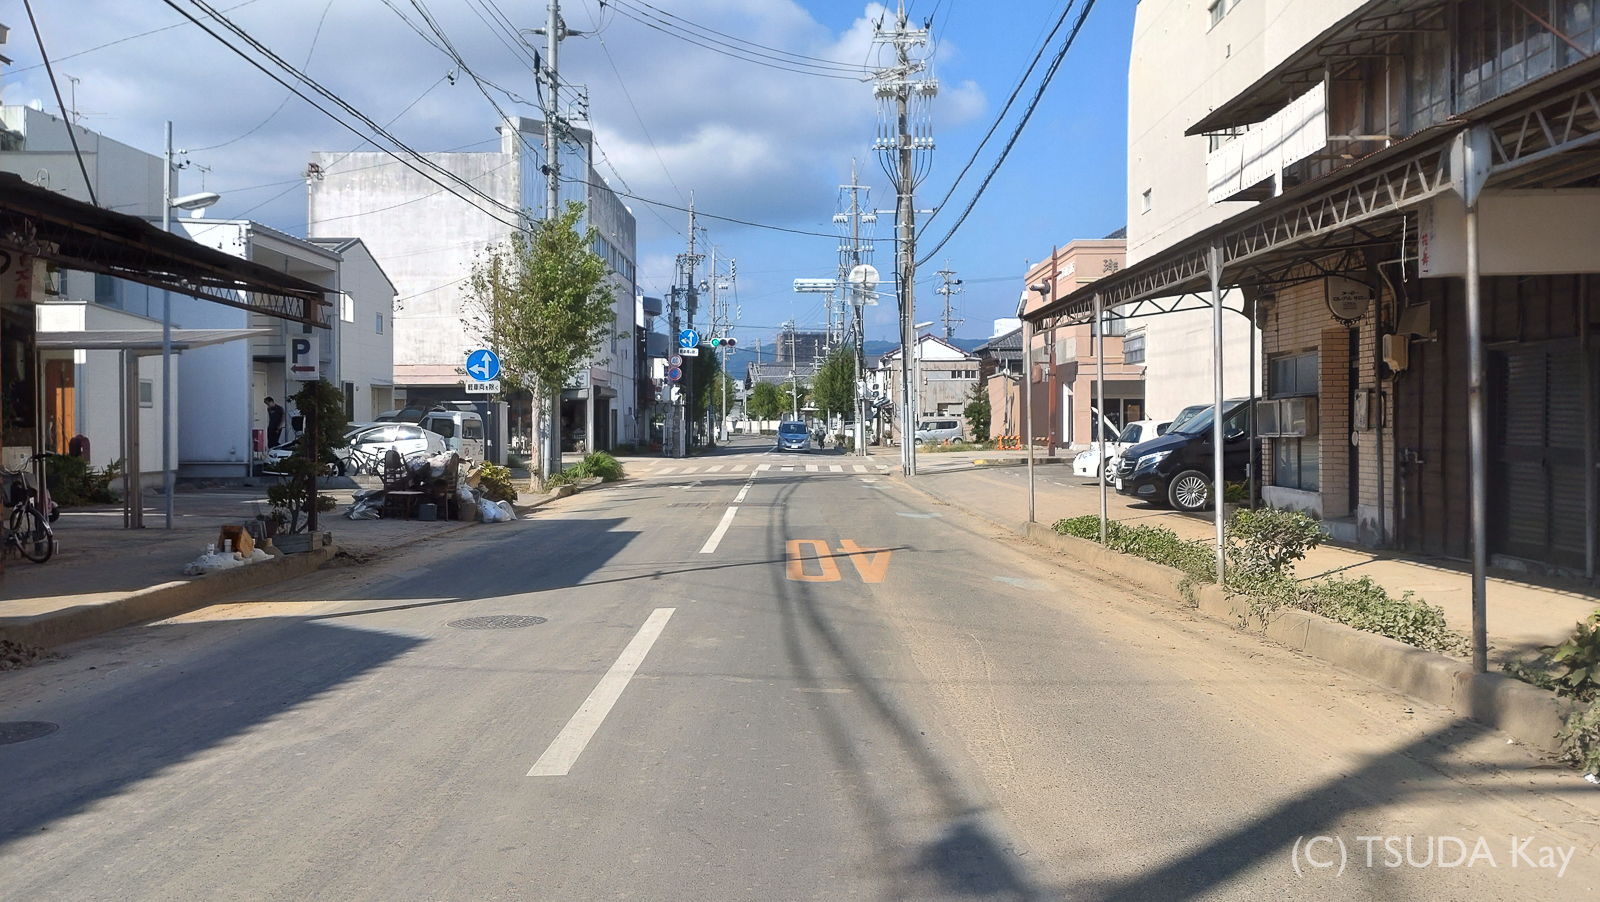 I cycled from mishima to shizuoka 04